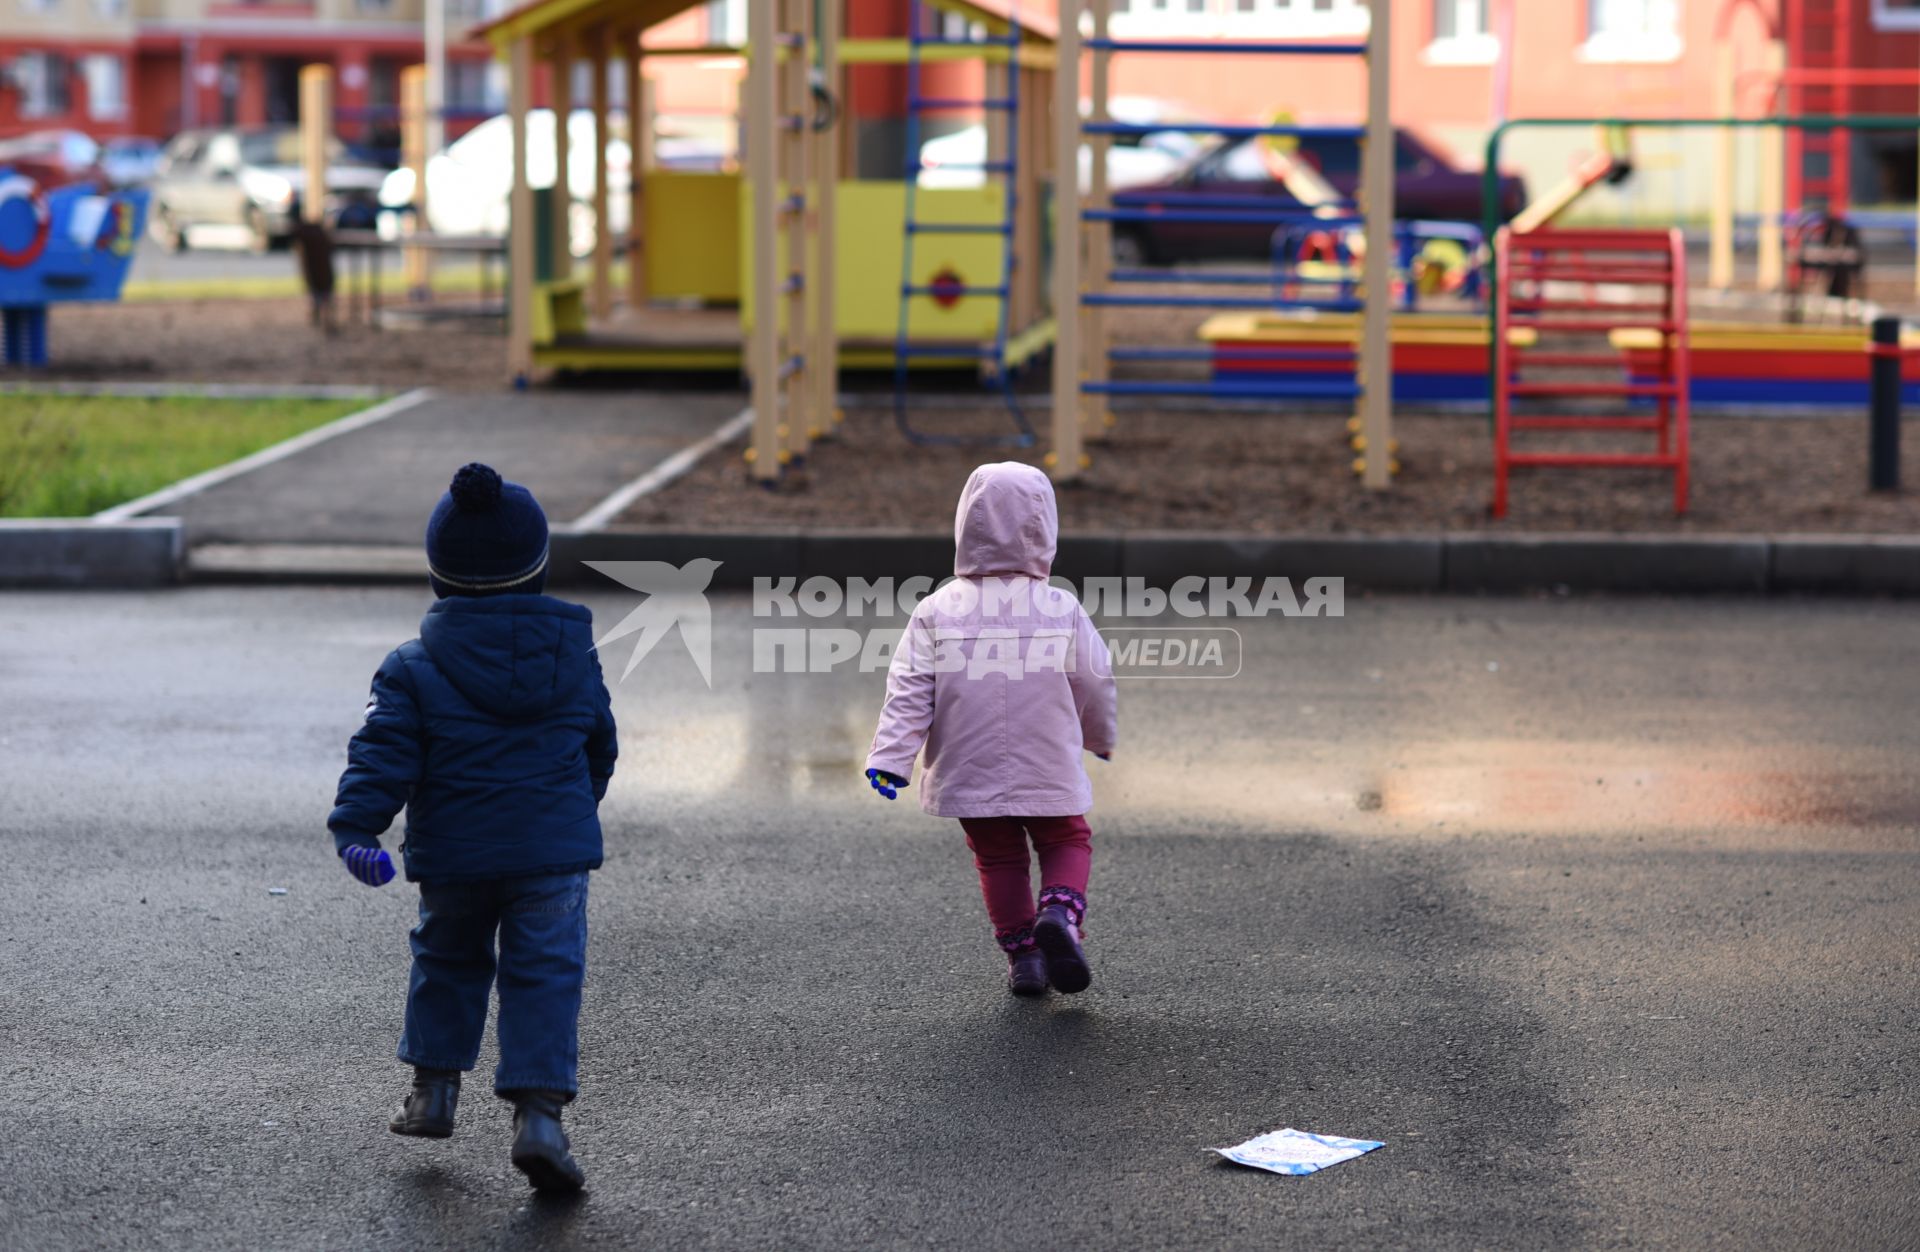 Оренбург. Дети на детской площадке.